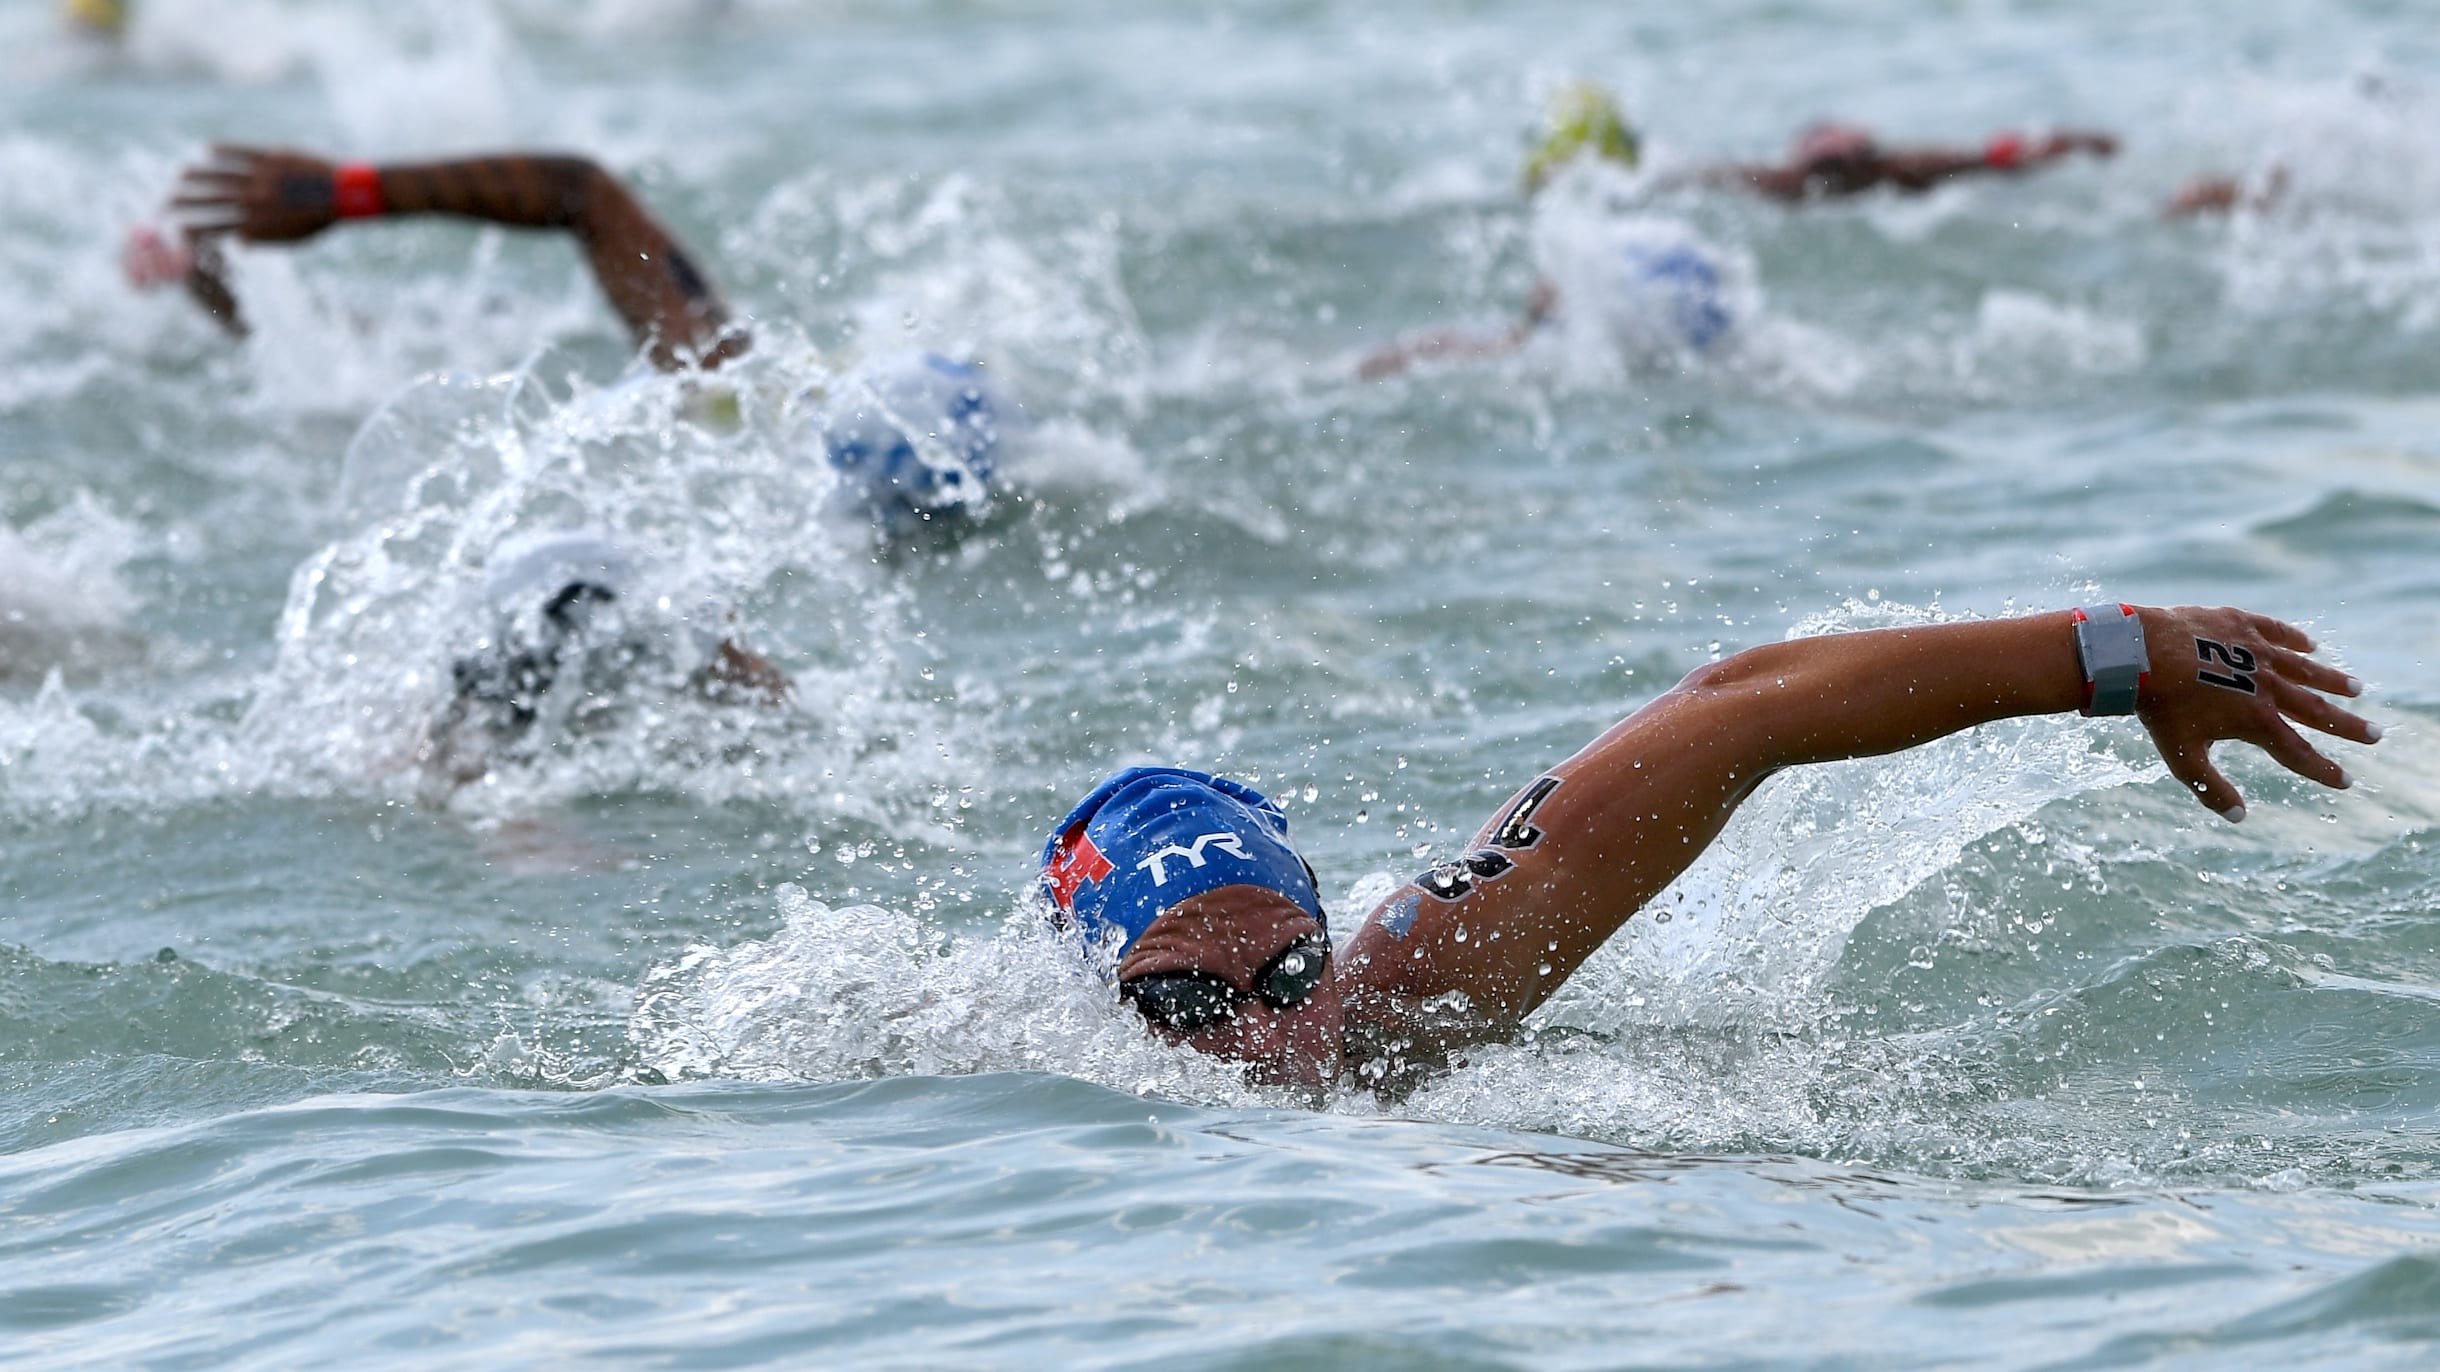 Nage en eau vive - L'équipe de France Olympique